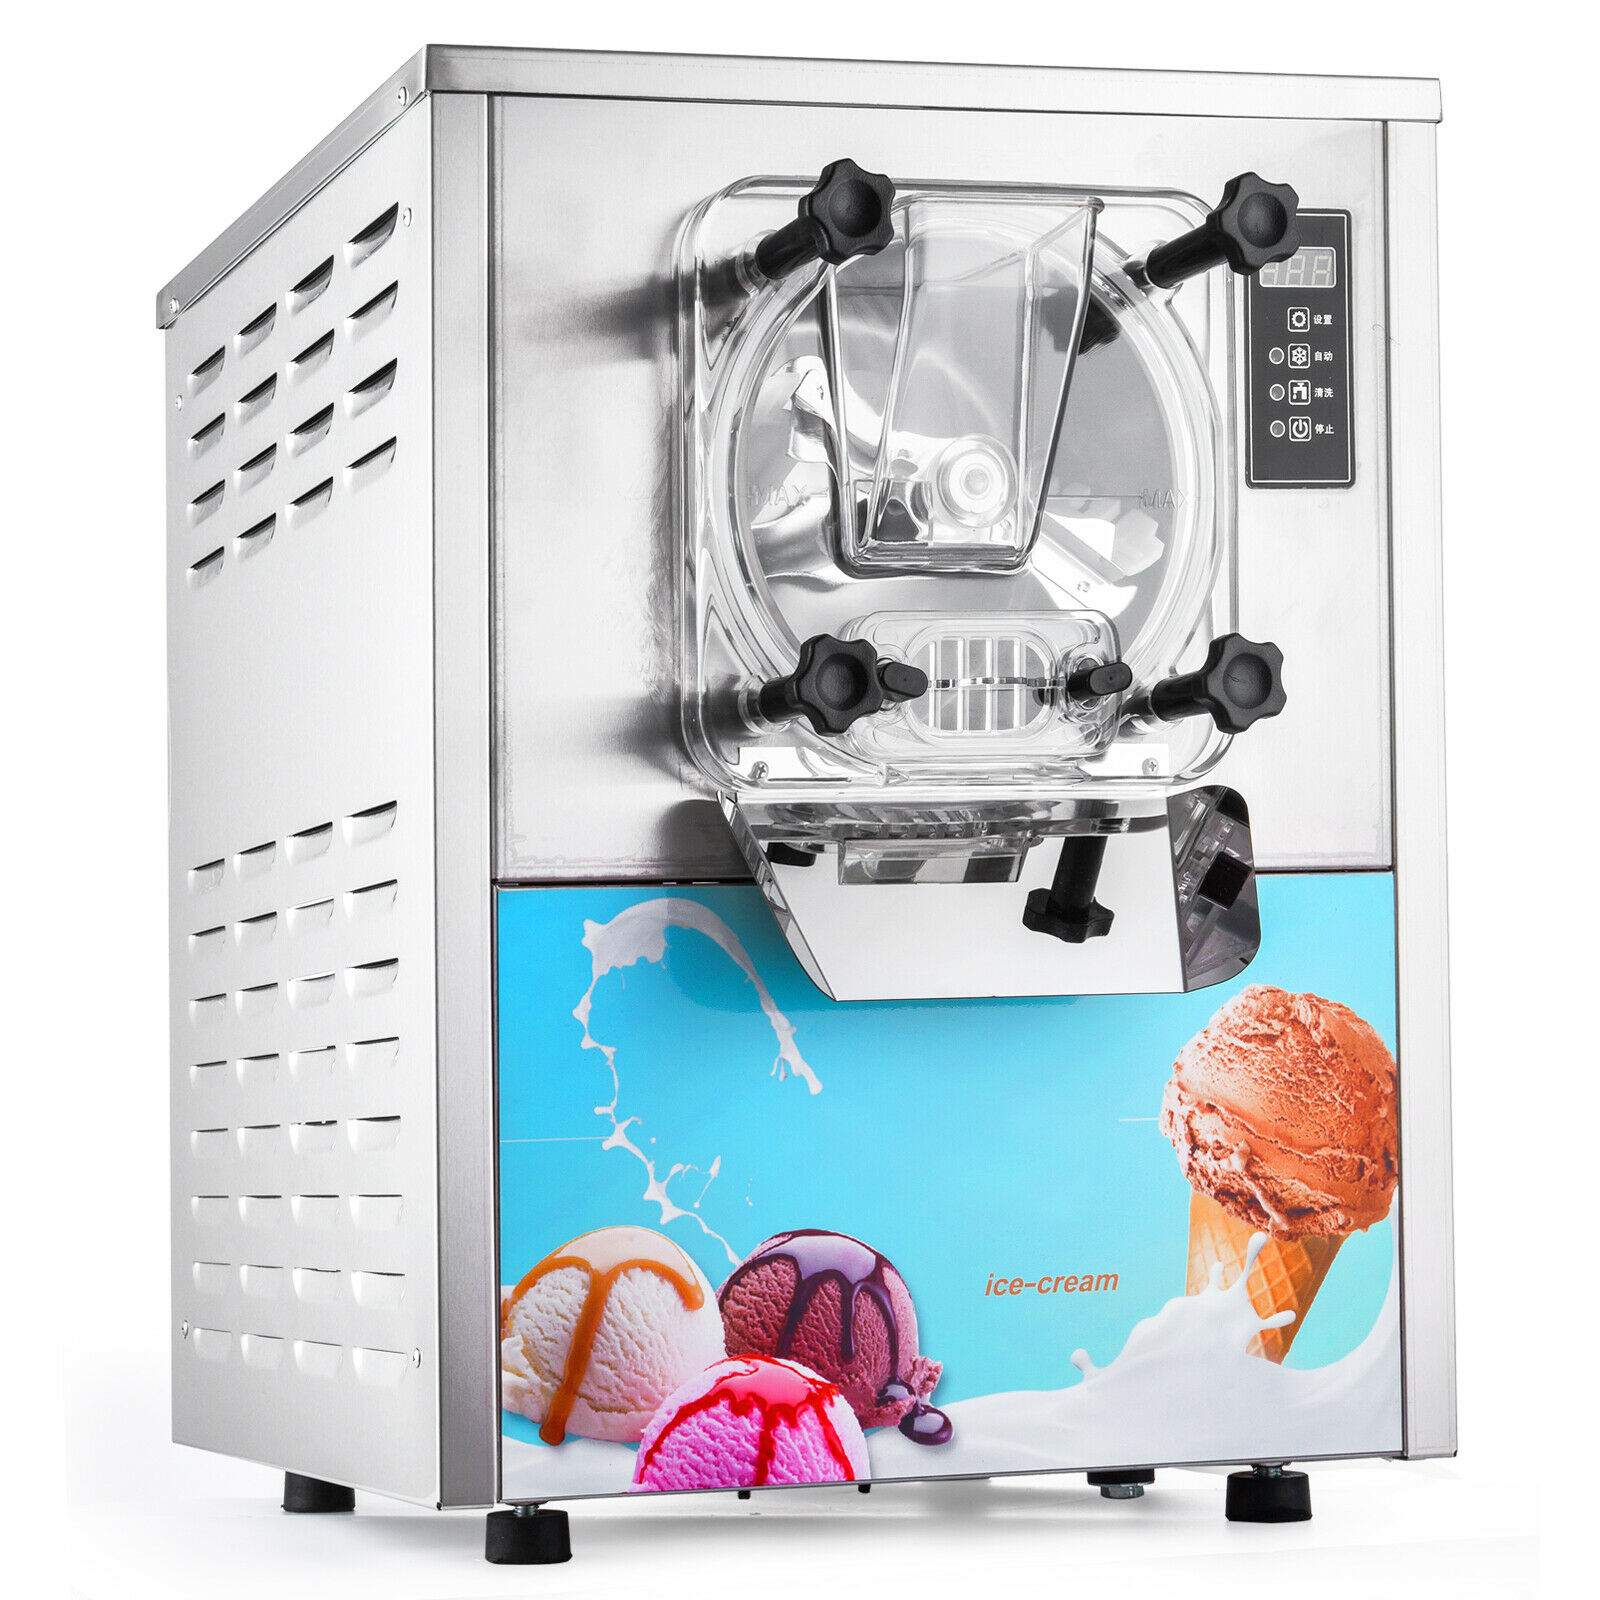 Máquina de hacer helados, diversifica tu oferta - Bauuman Tech S.L.